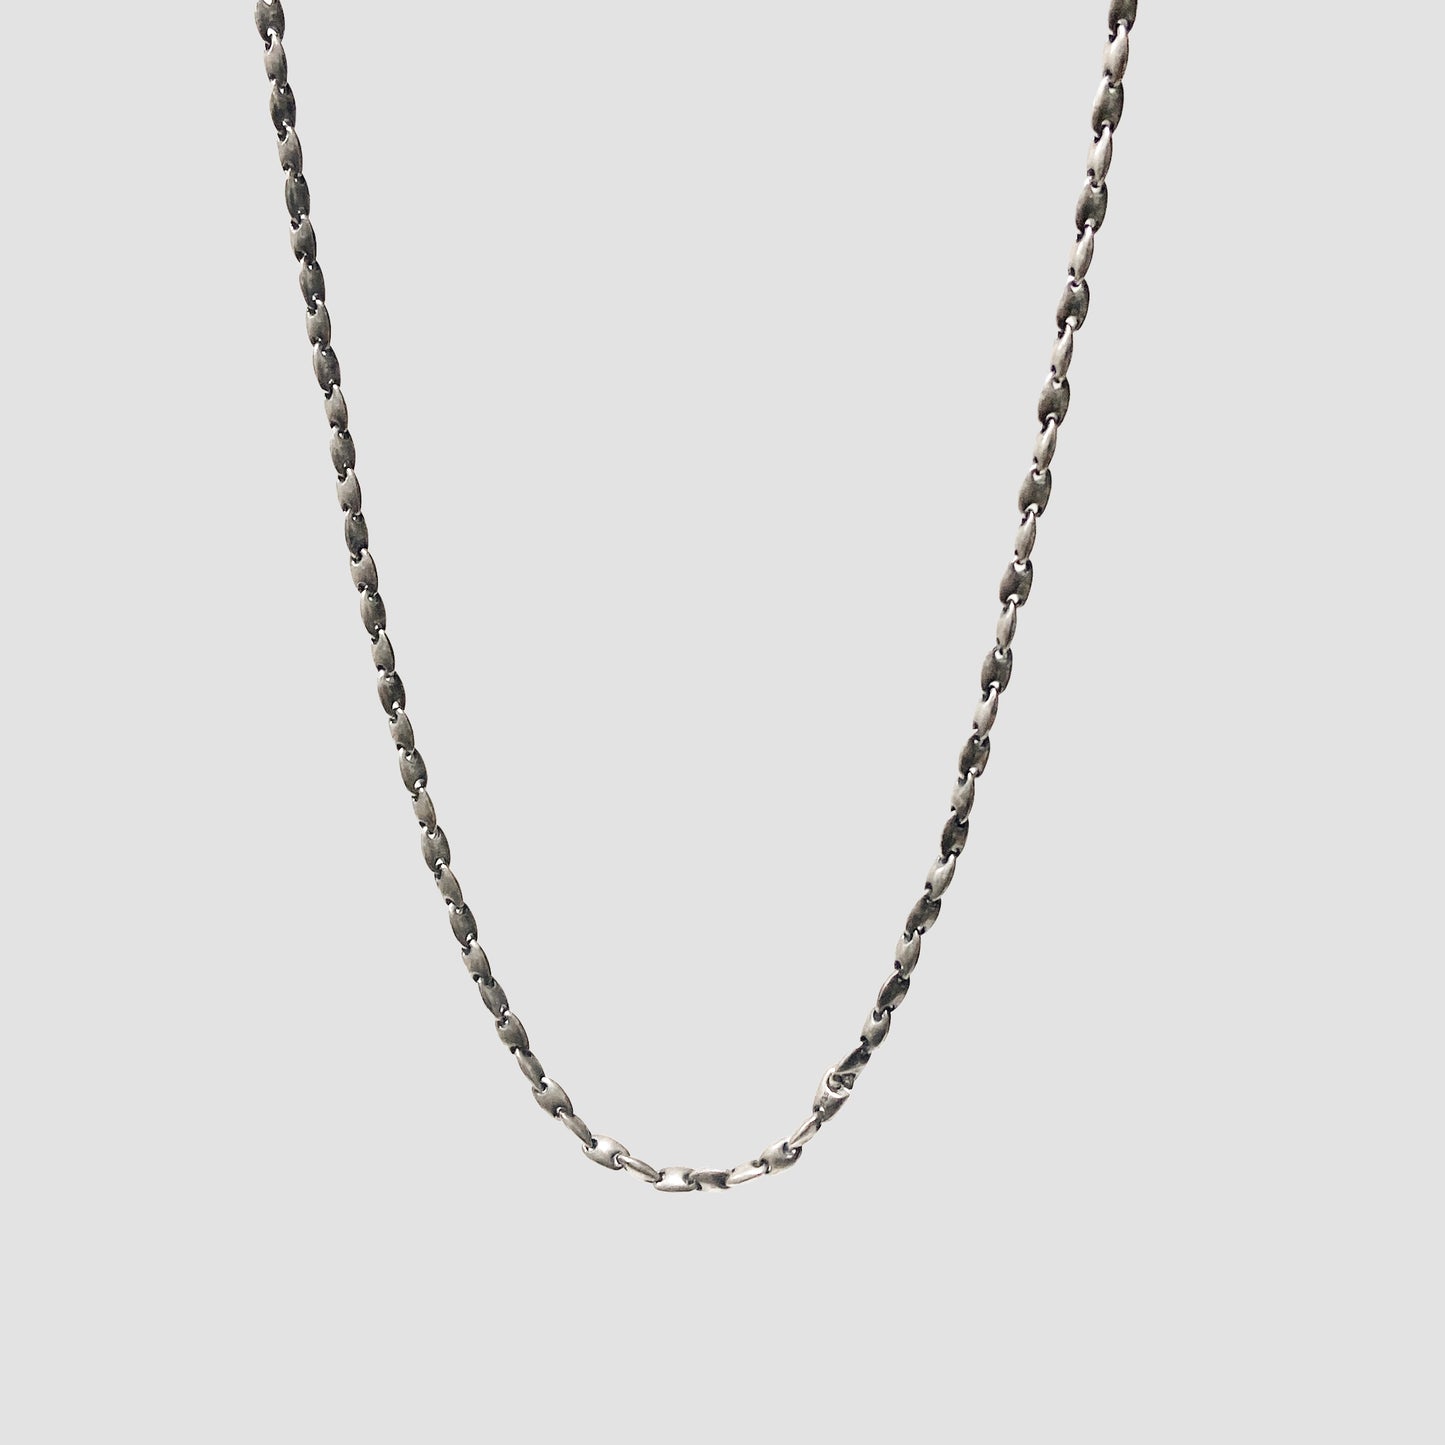 NeoNe Necklace - Silver - O/S - 25